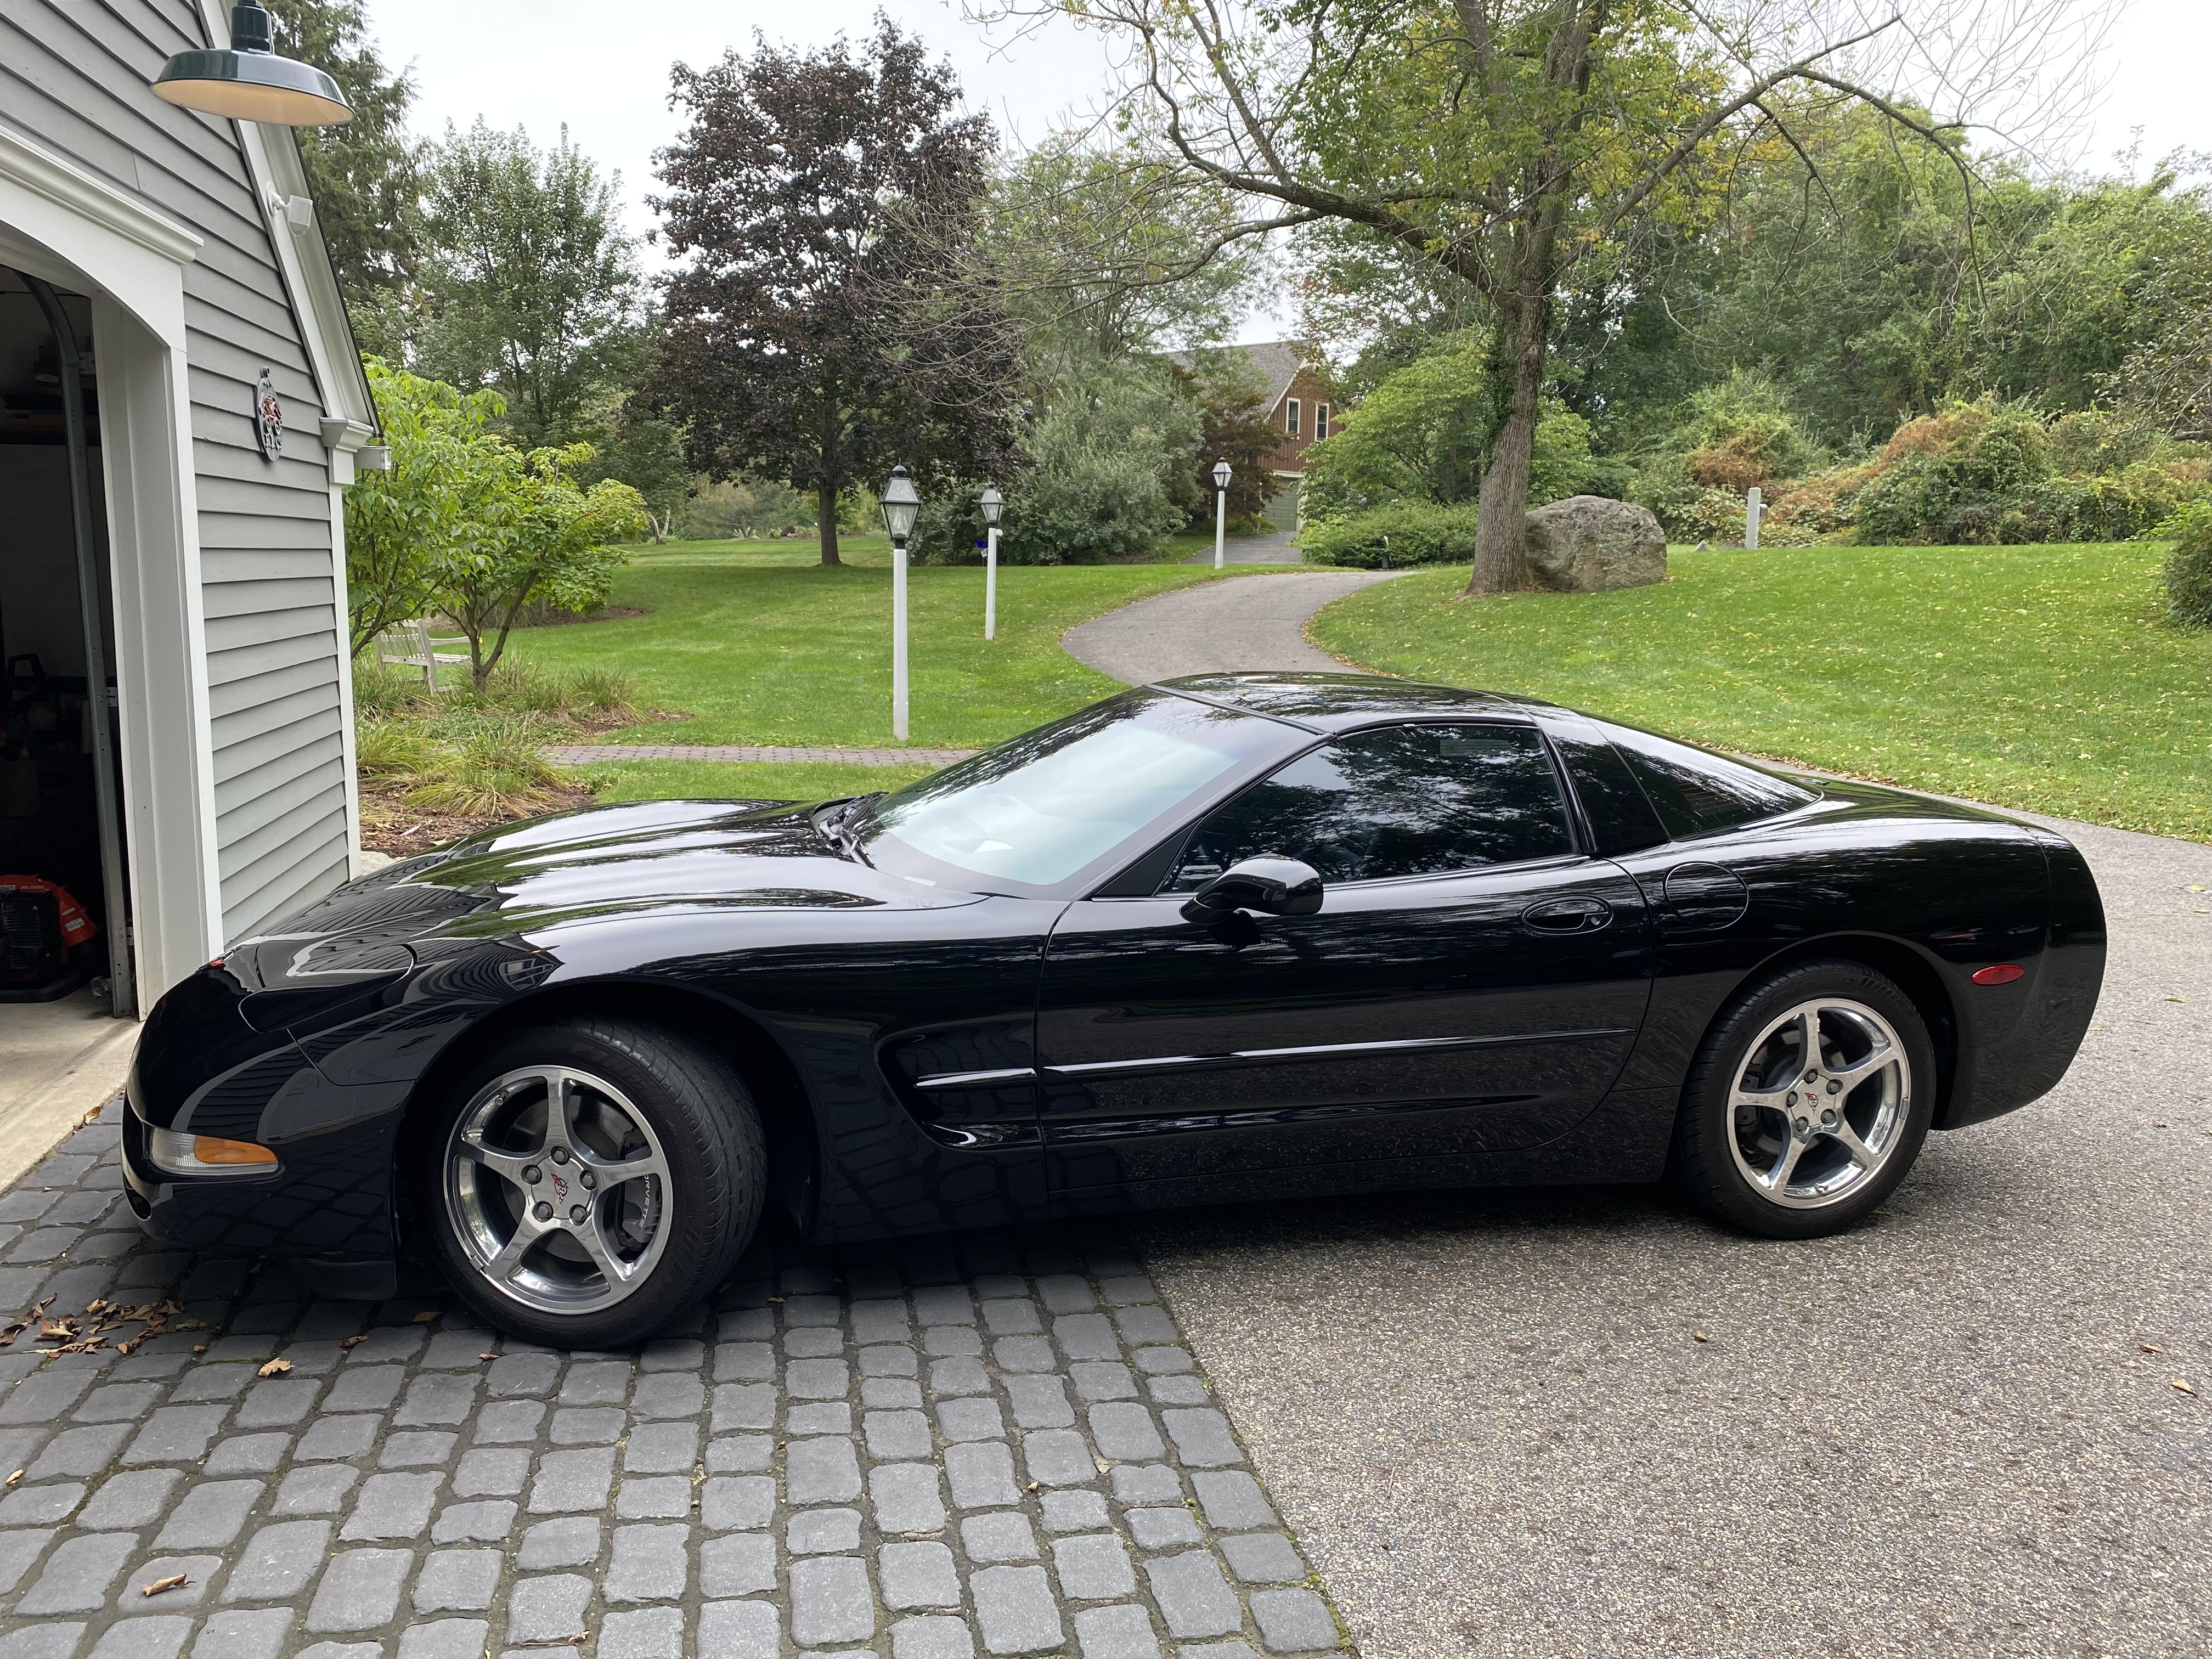 2002 corvette for sale